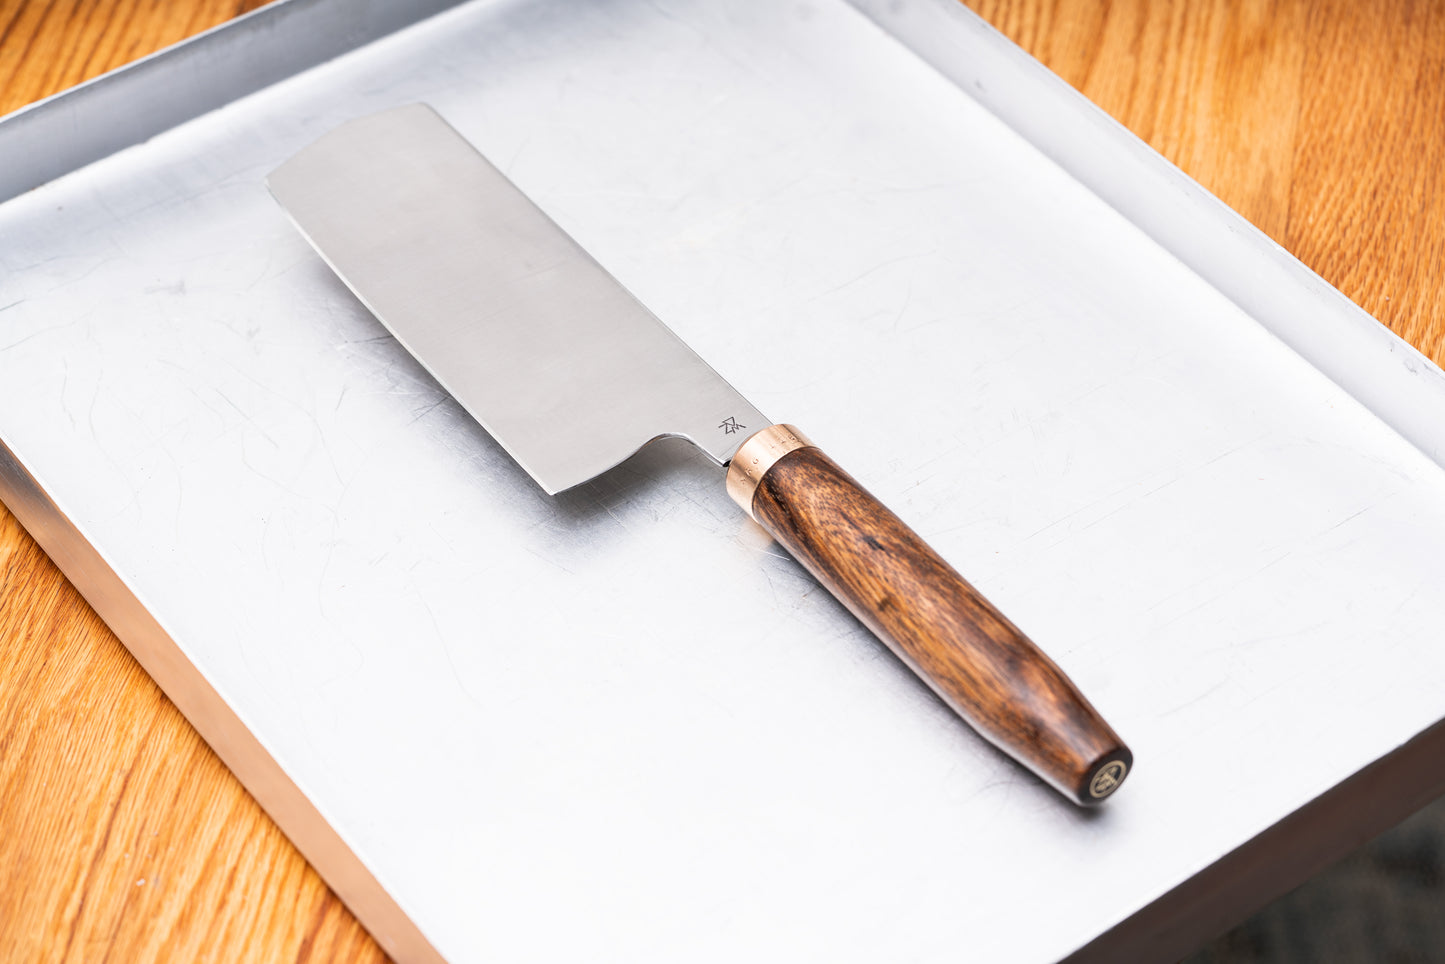 6" Nakiri Chefs Knife